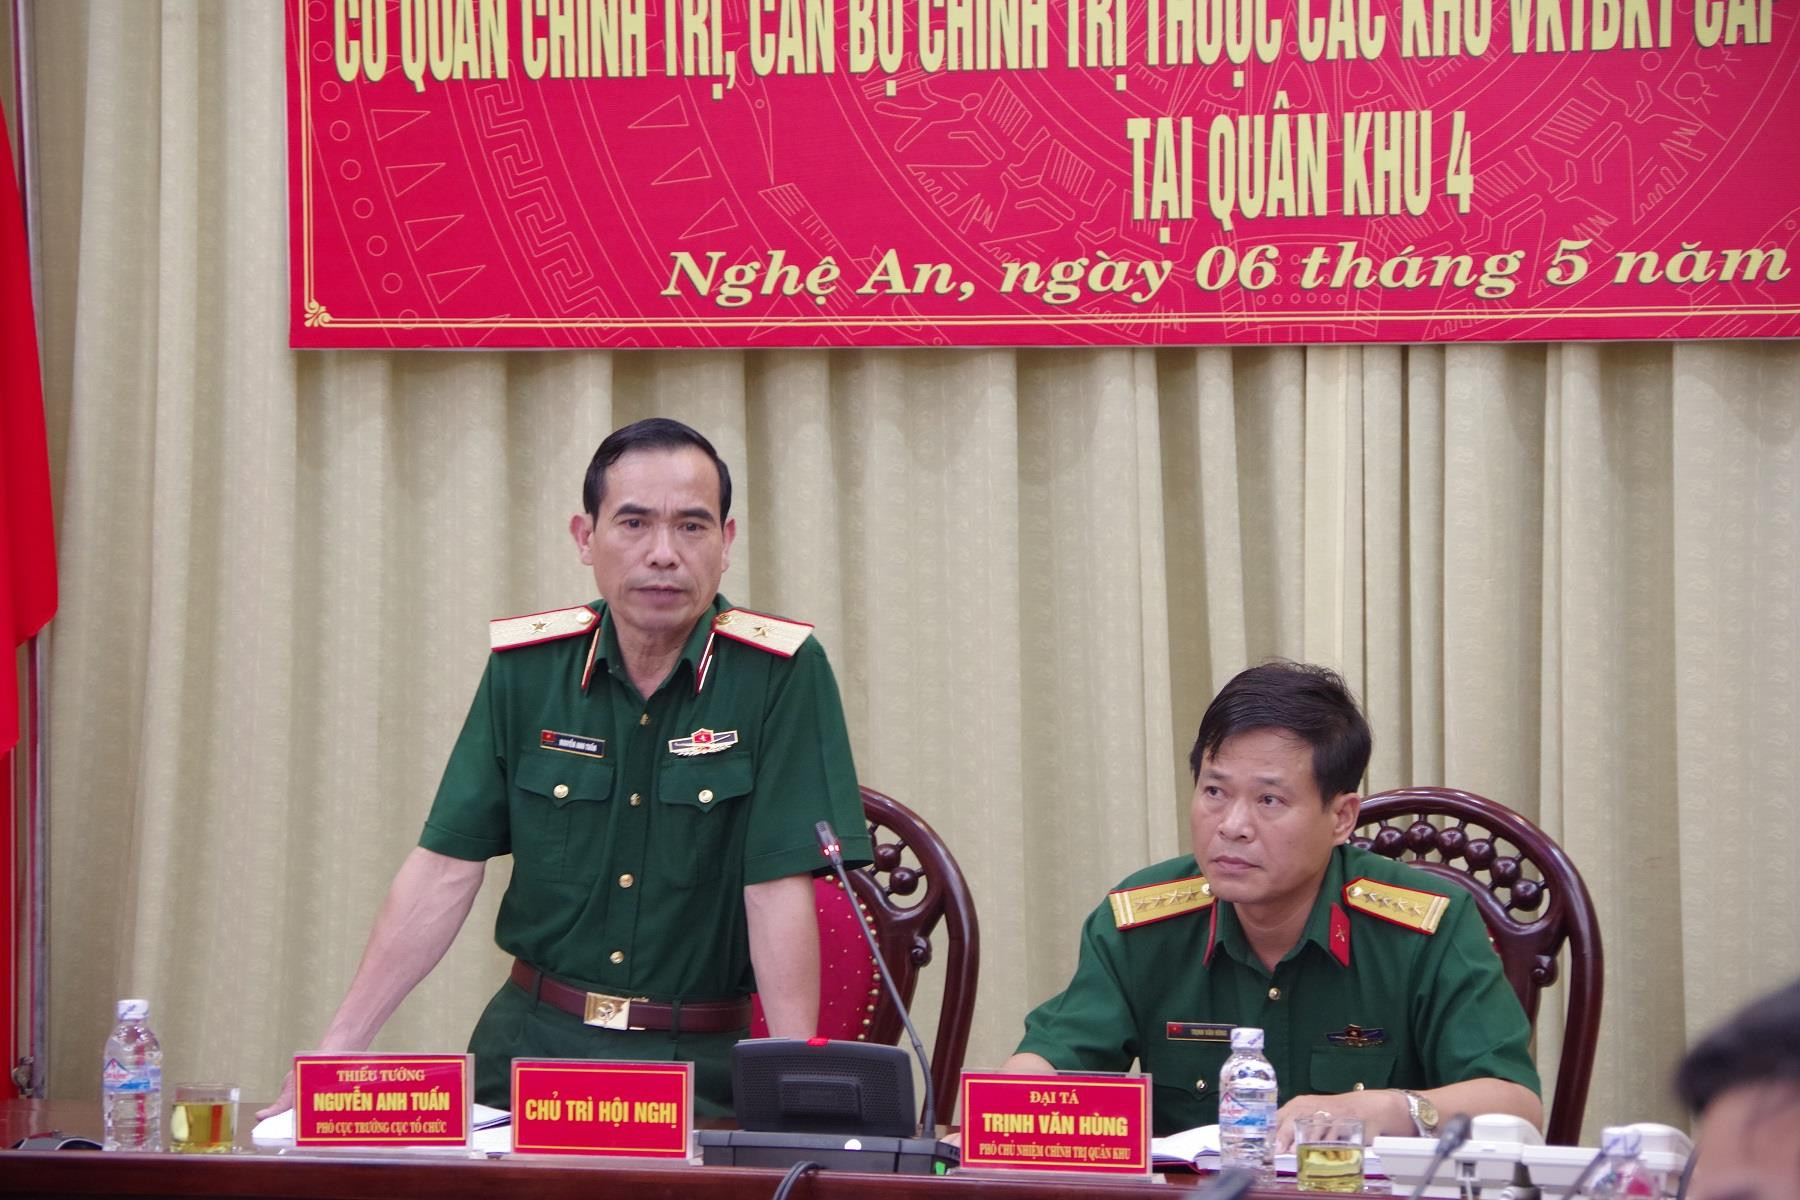 Thiếu tướng Nguyễn Anh Tuấn, Phó Cục trưởng Cục tổ chức, Tổng cục chính trị QĐNDVN phát biểu tại hội nghị